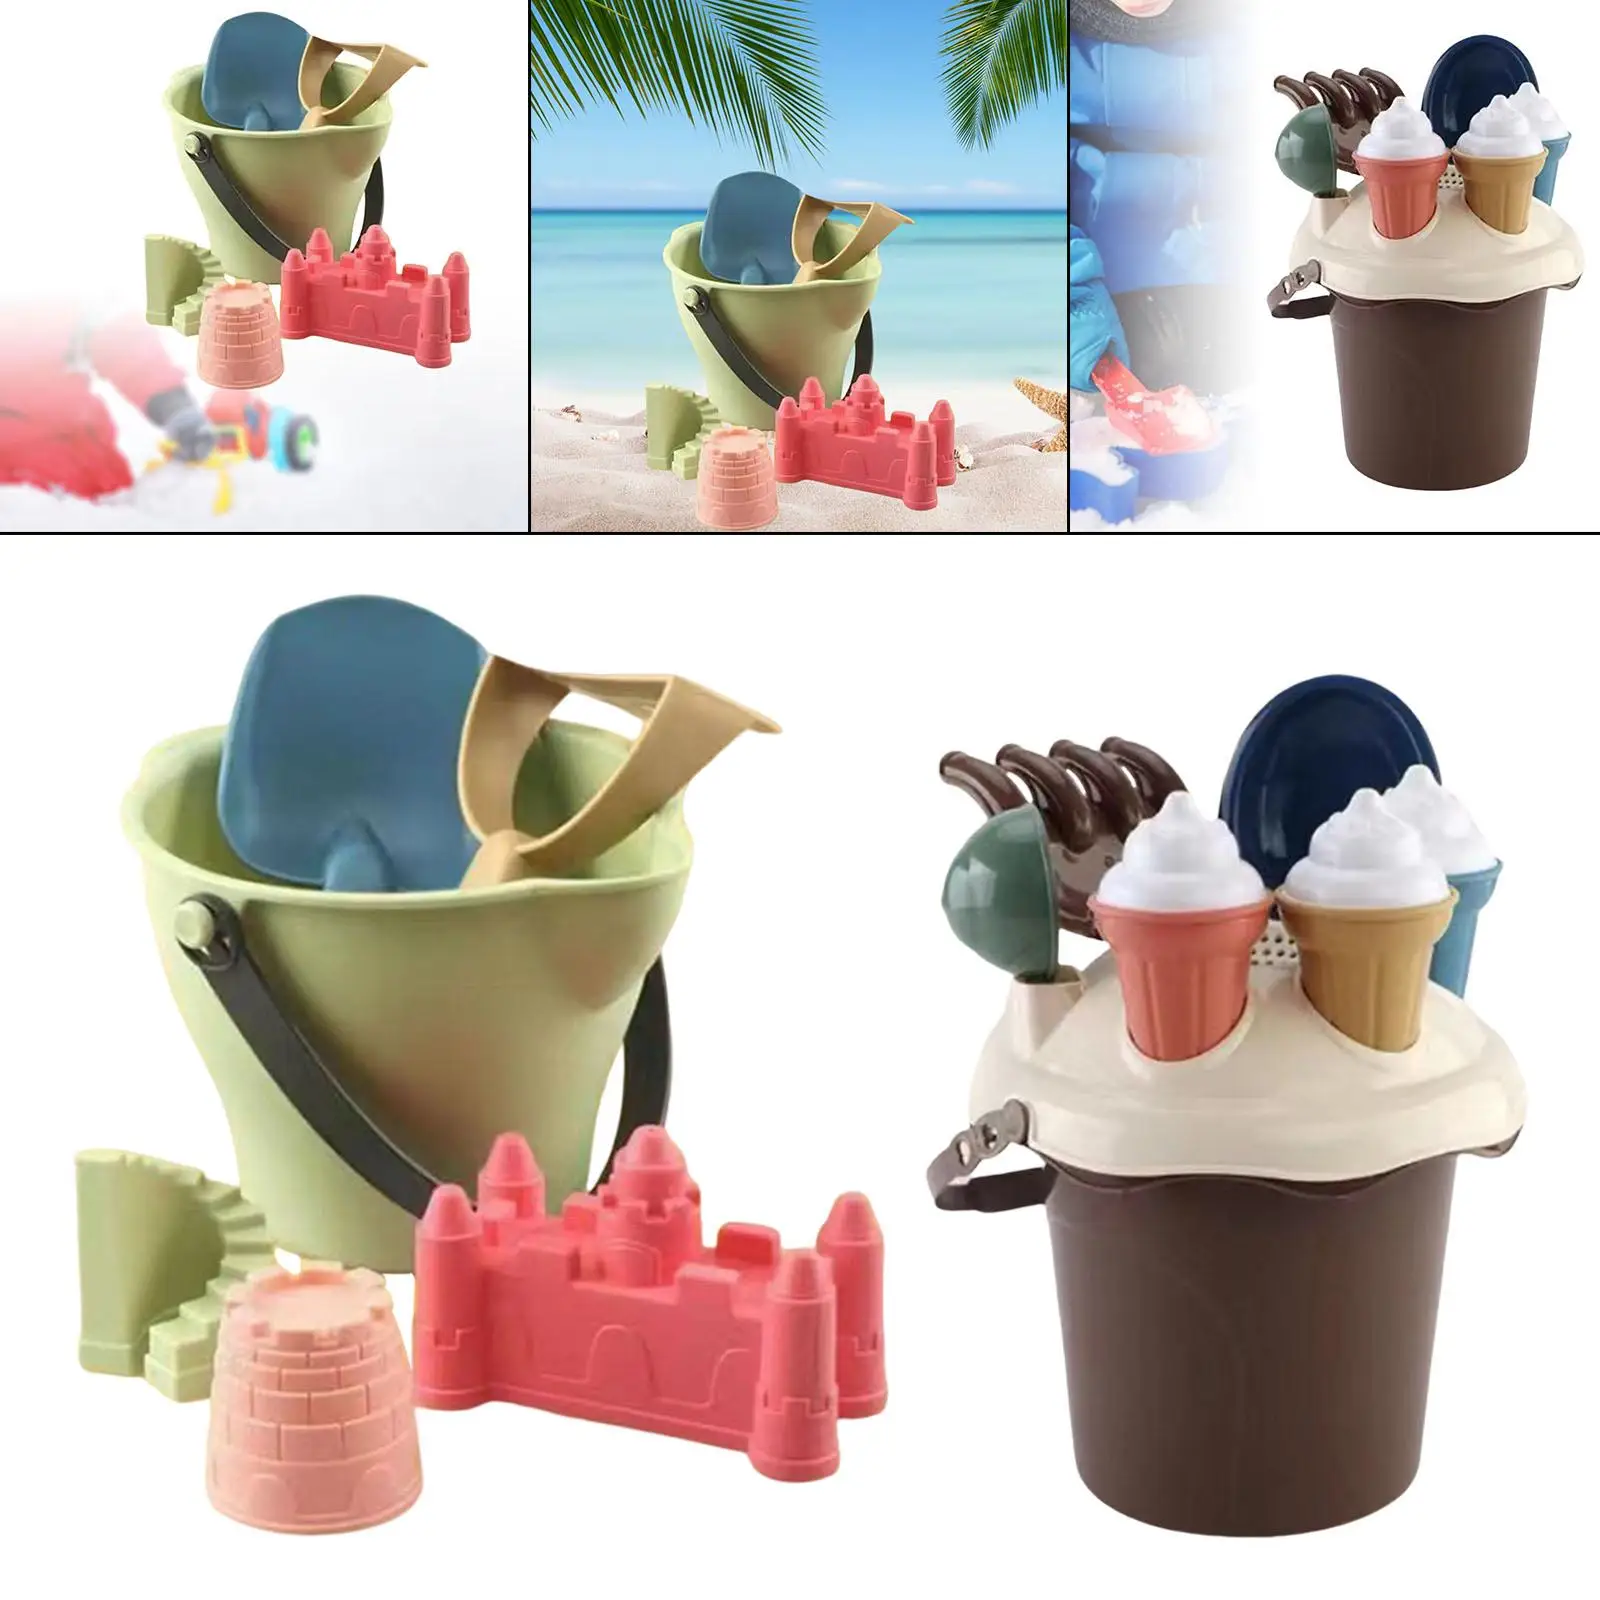 Travel Sand Toys Castle Kit,Outdoor Indoor Play Gift,Beach Tool Kit,Sandbox Toys for Children Kids Boys Girls Toddler